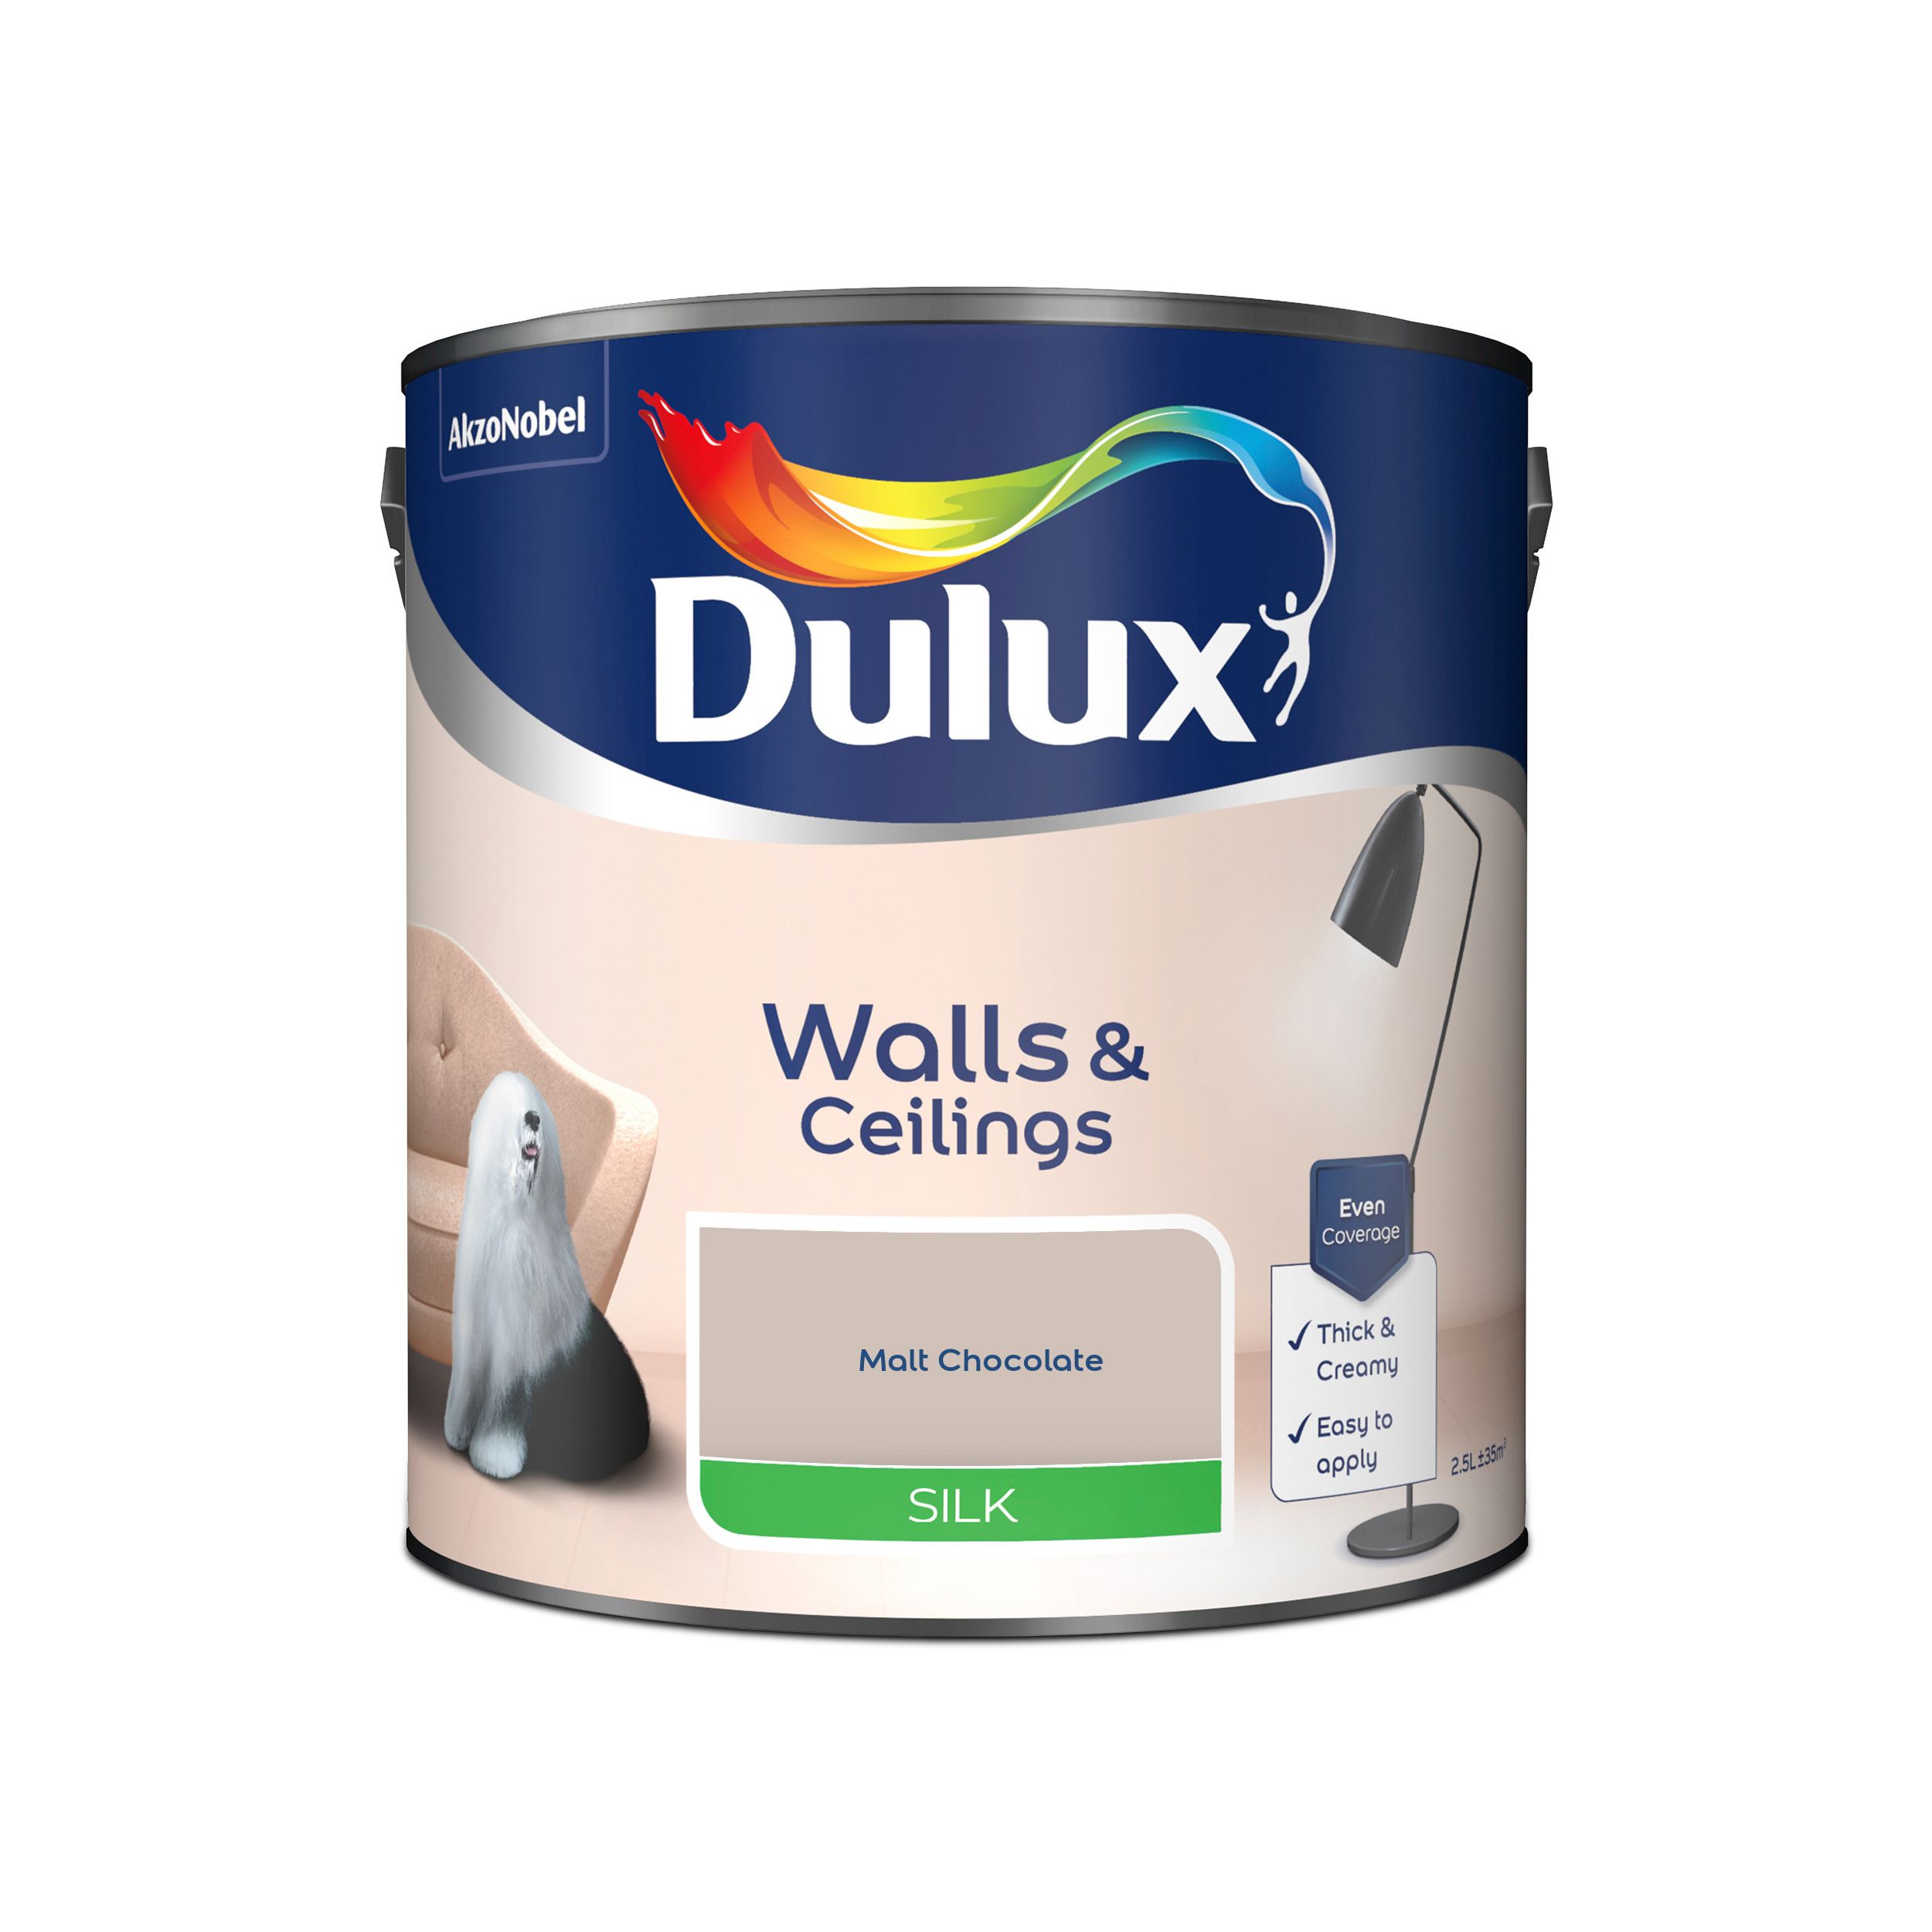 Dulux Walls & ceilings Malt chocolate Silk Emulsion paint, 2.5L